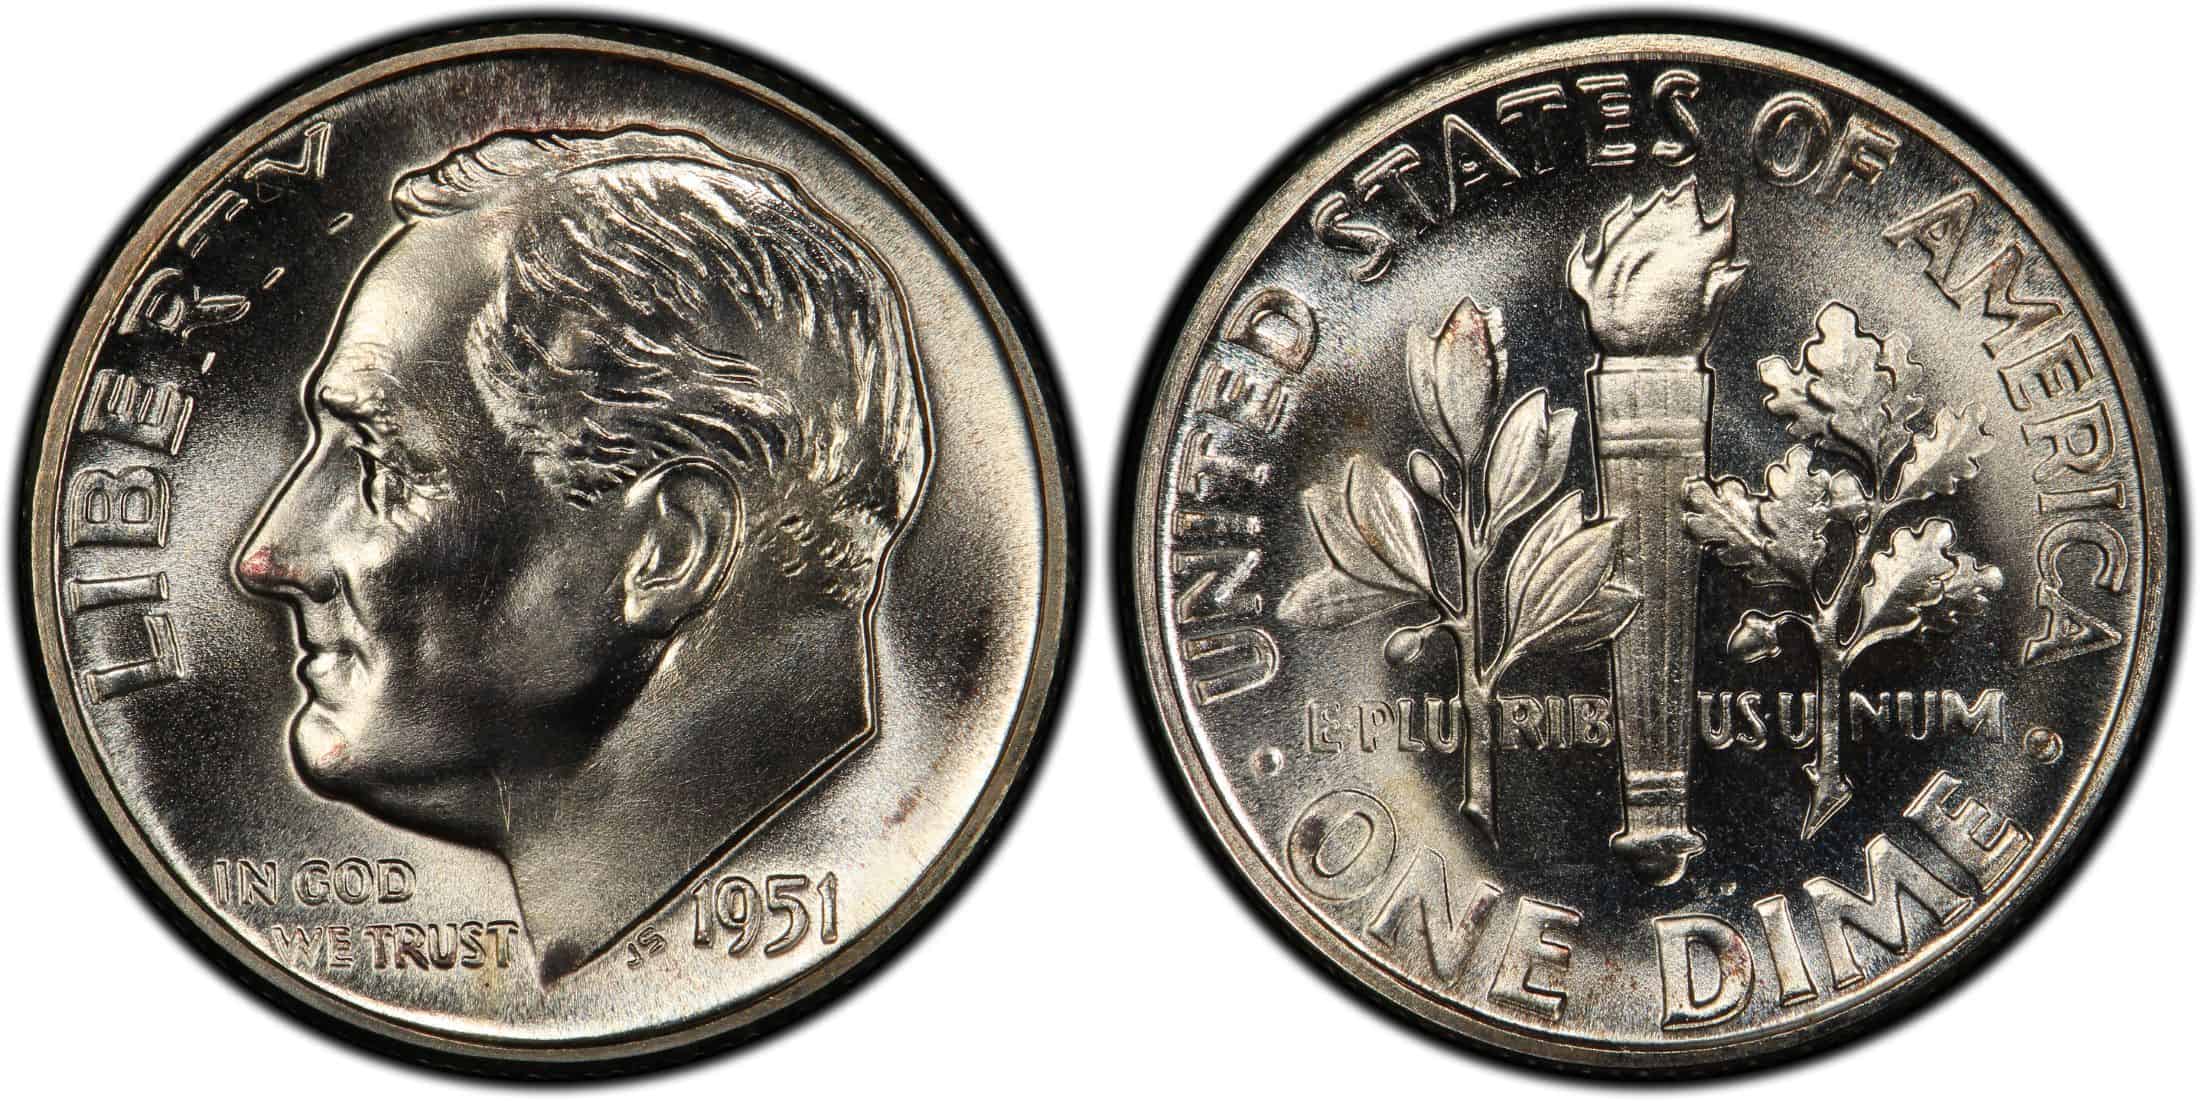 1951 proof Roosevelt dime Value